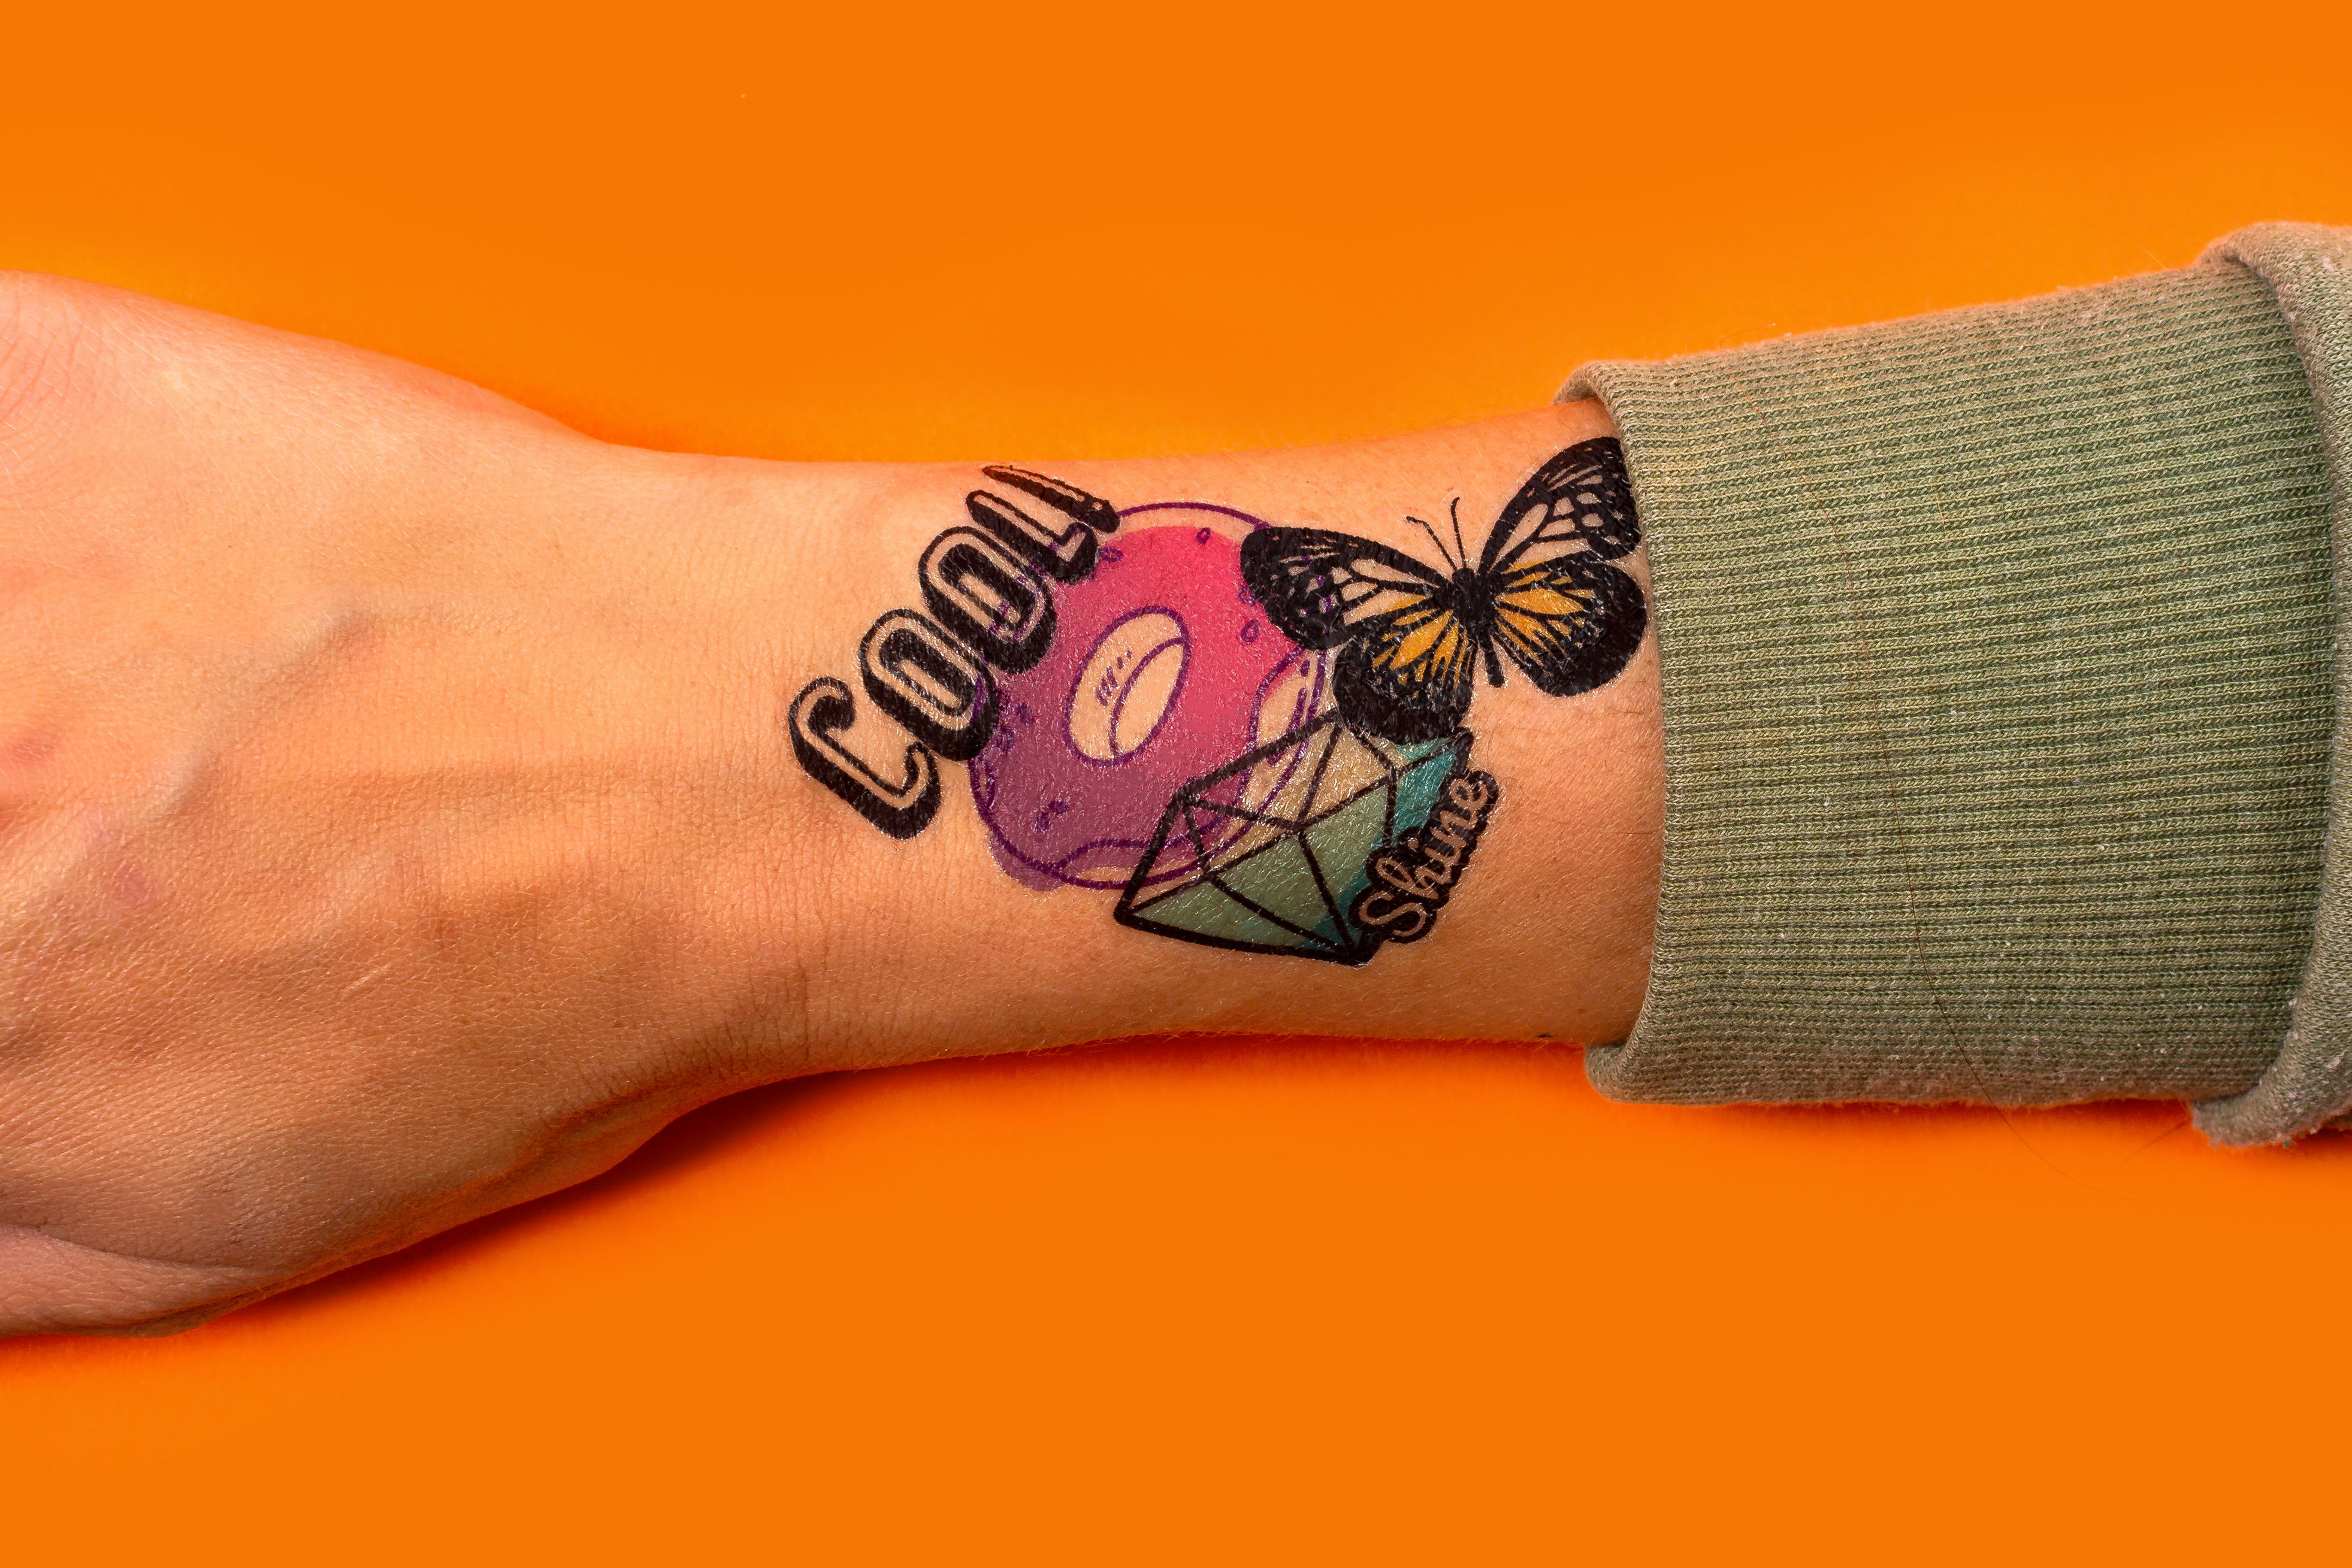 pols van een persoon met vier nep tattoos over elkaar heen op een oranje achtergrond